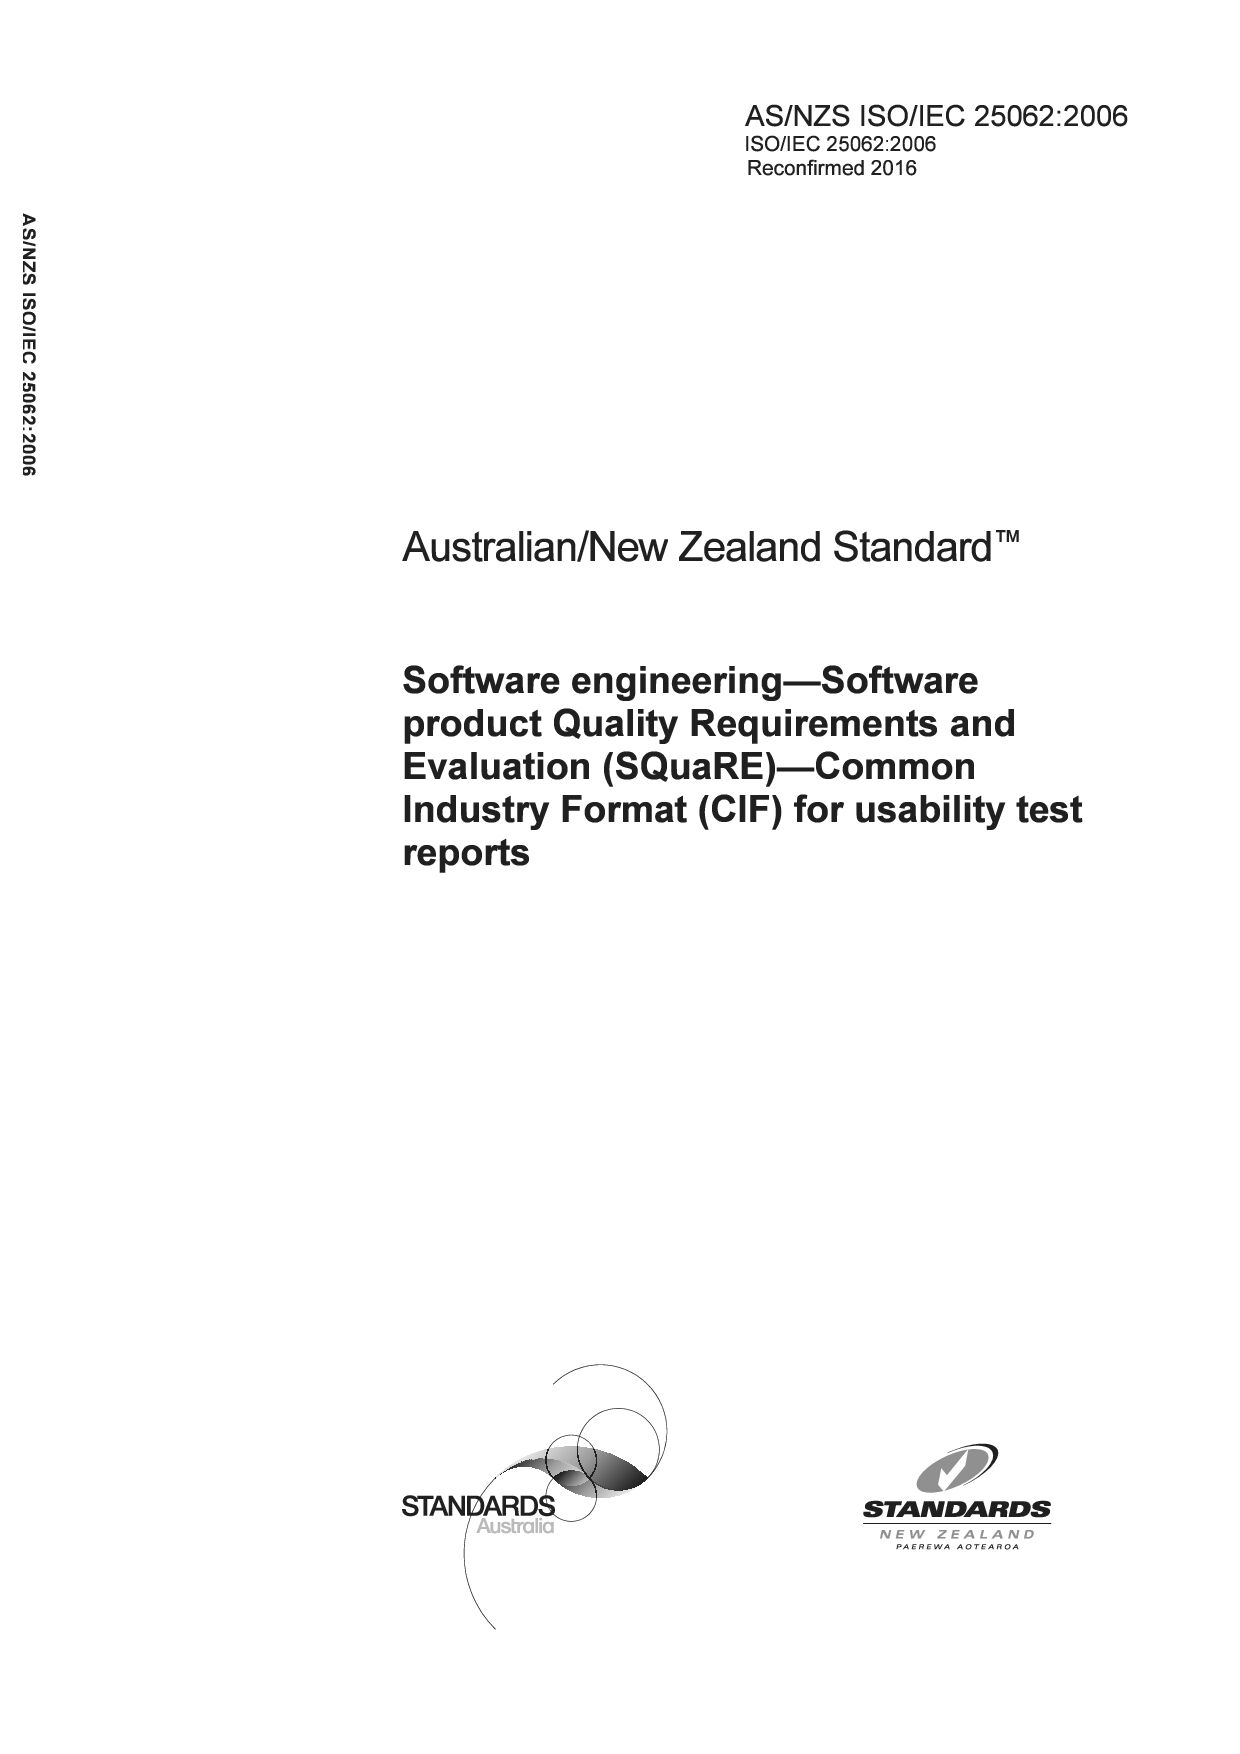 AS/NZS ISO/IEC 25062:2006(R2016)